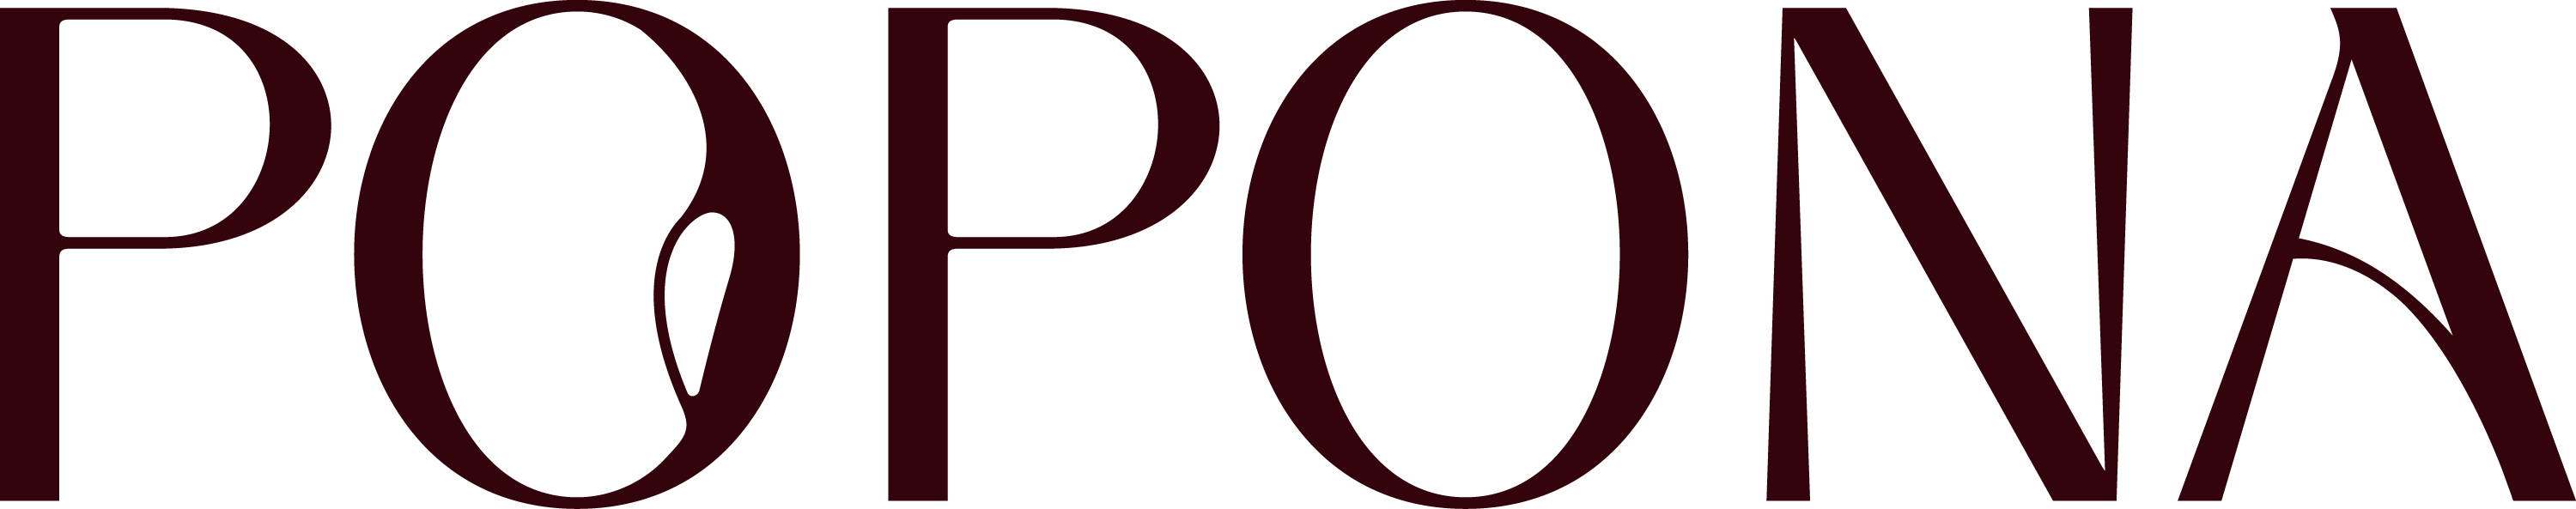 popona-logoforma2-darkbrown